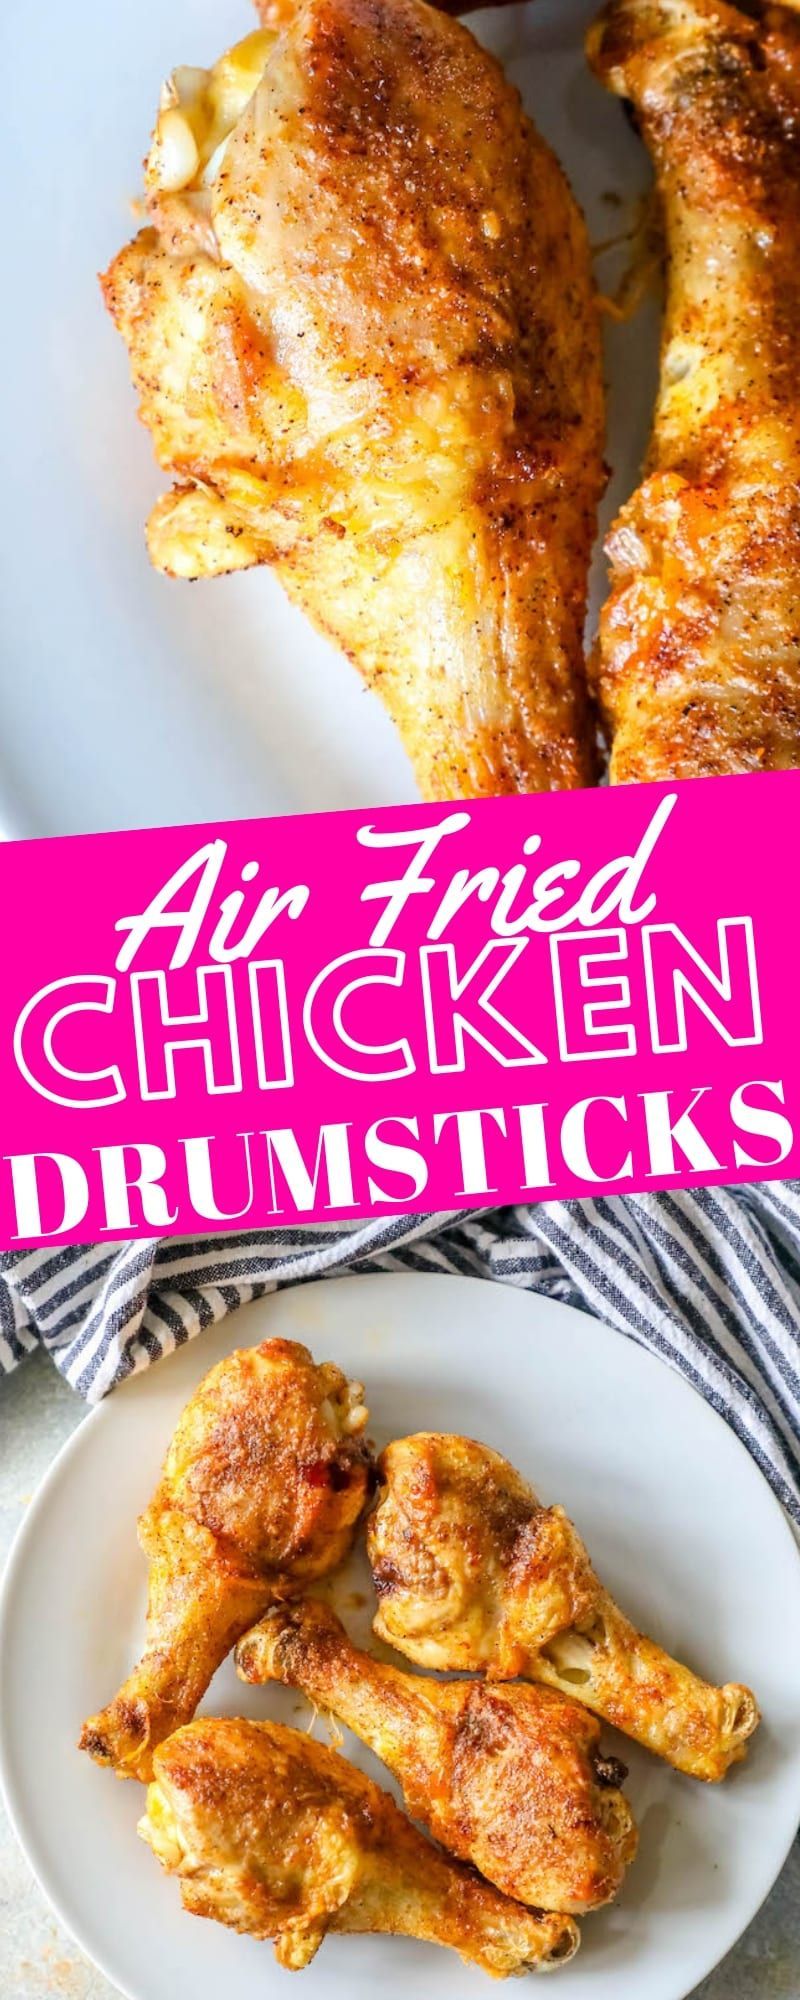 The Best Air Fried Chicken Drumsticks - Sweet Cs Designs - The Best Air Fried Chicken Drumsticks - Sweet Cs Designs -   19 air fryer recipes chicken drumsticks ideas